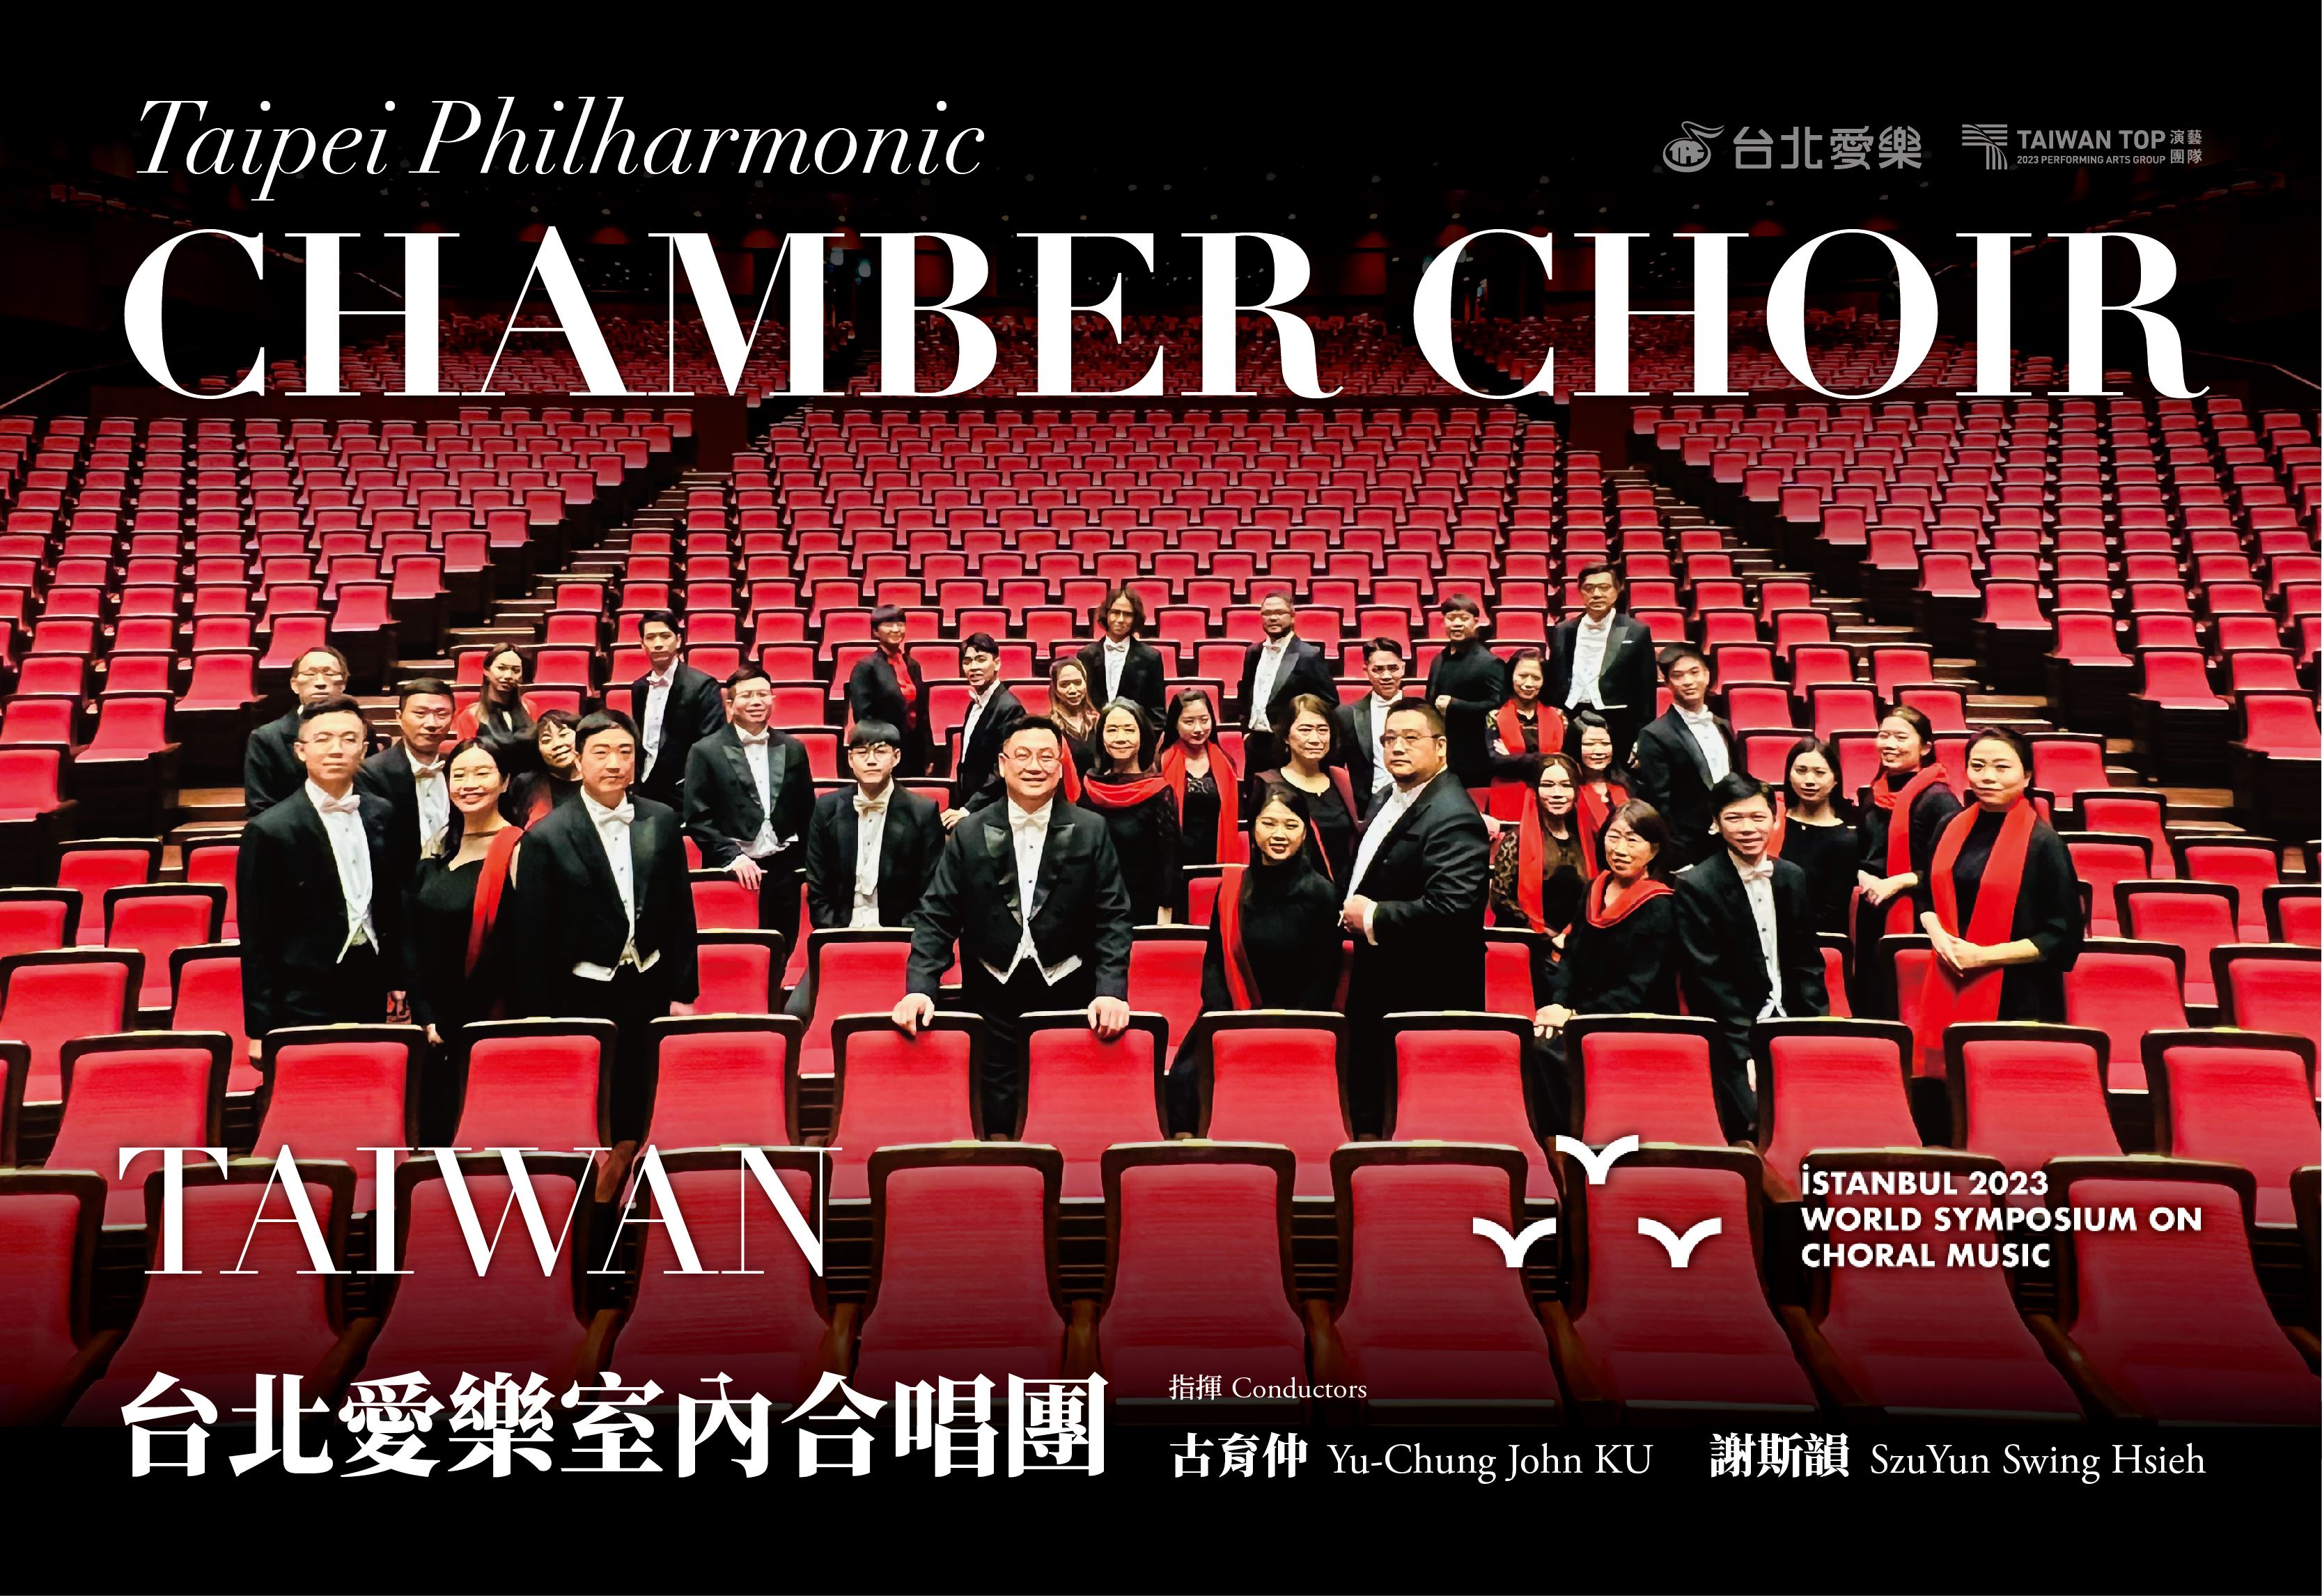 Taipei Philharmonic Chamber Choir invited to perform in Türkiye